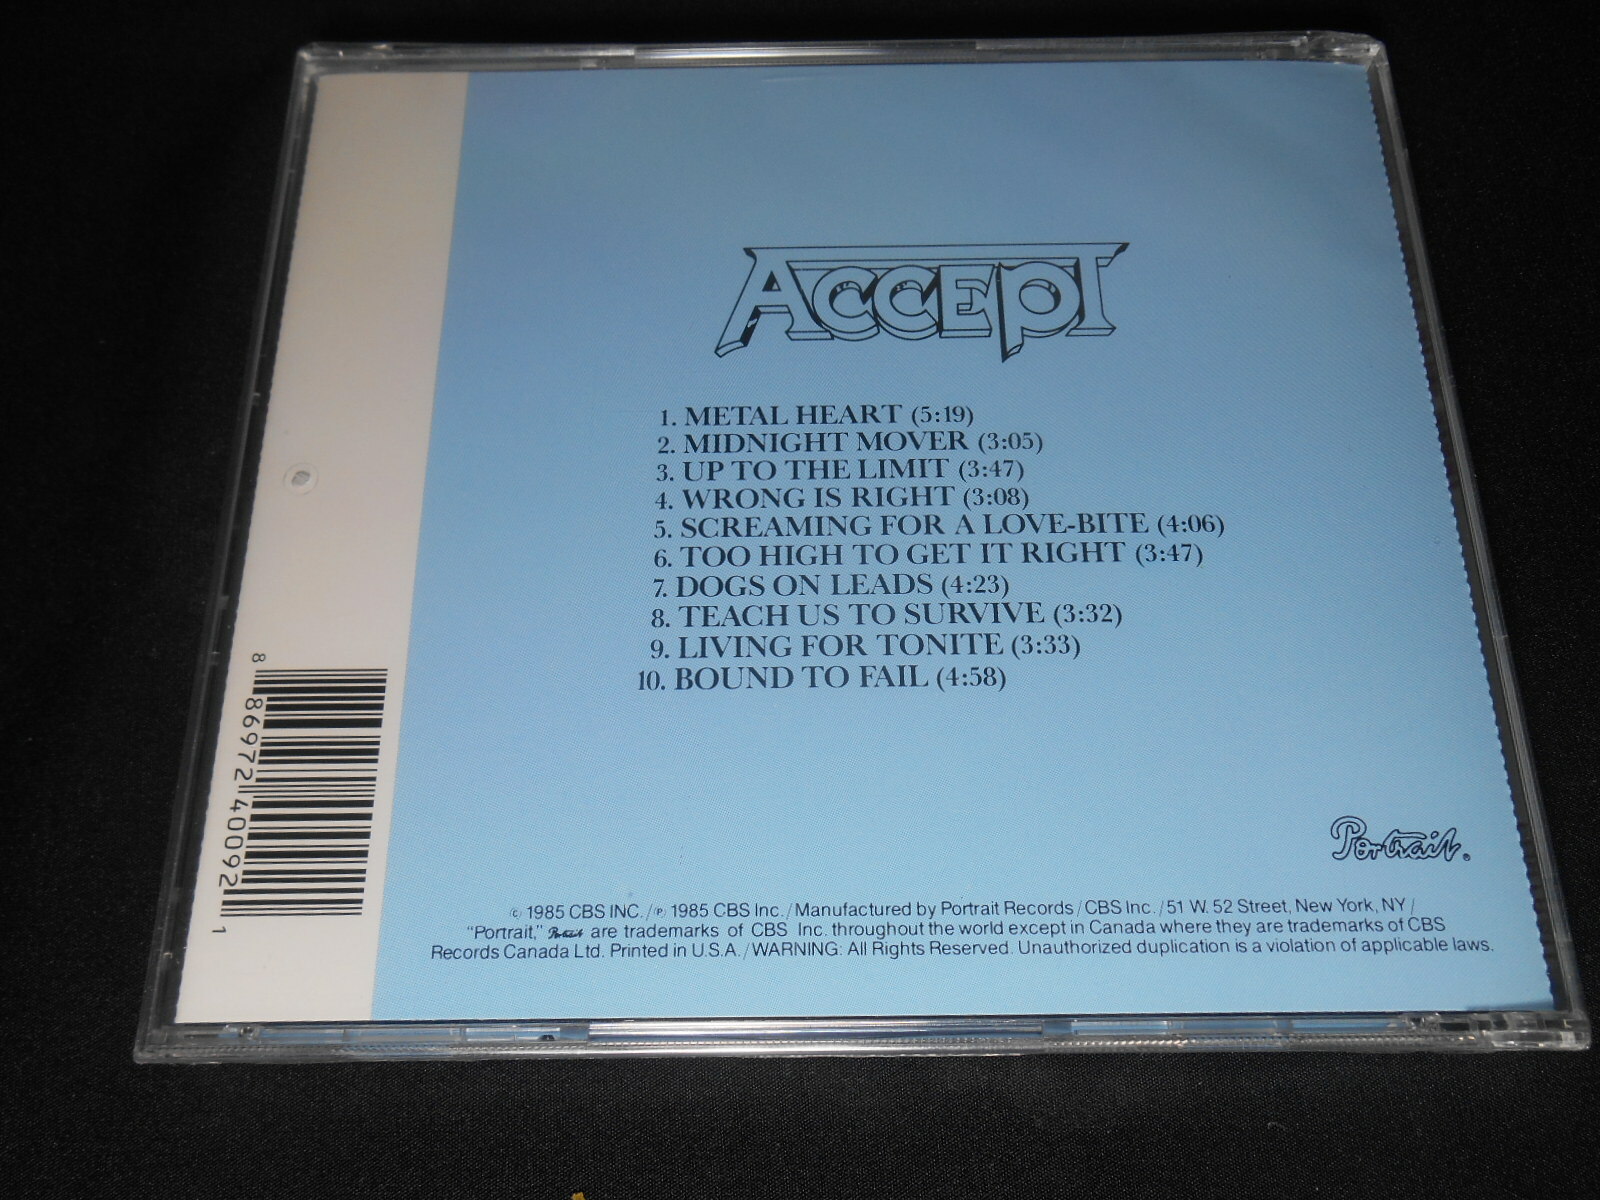 CD - Accept - Metal Heart (Lacrado/USA)